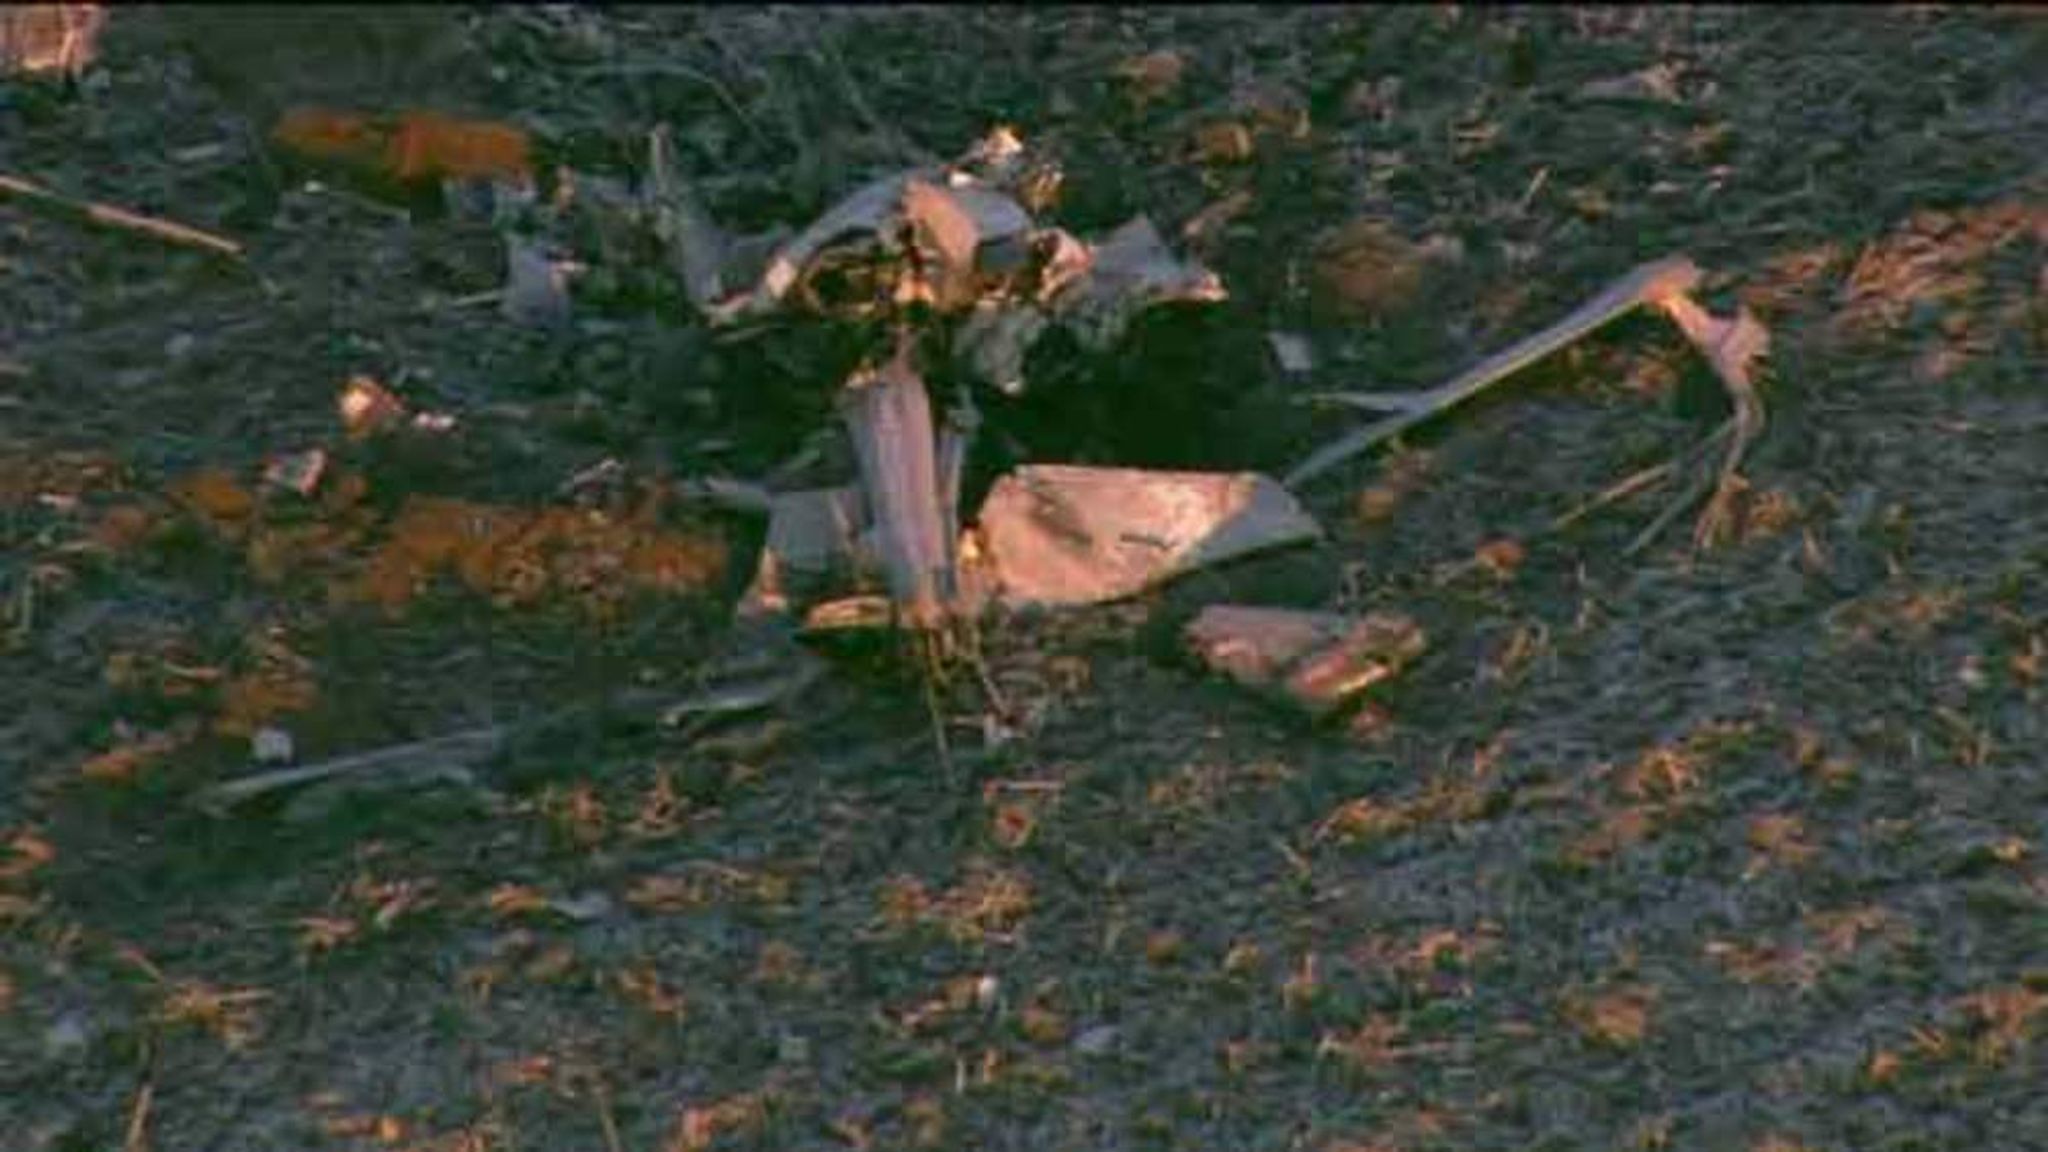 flight 93 wreckage bodies